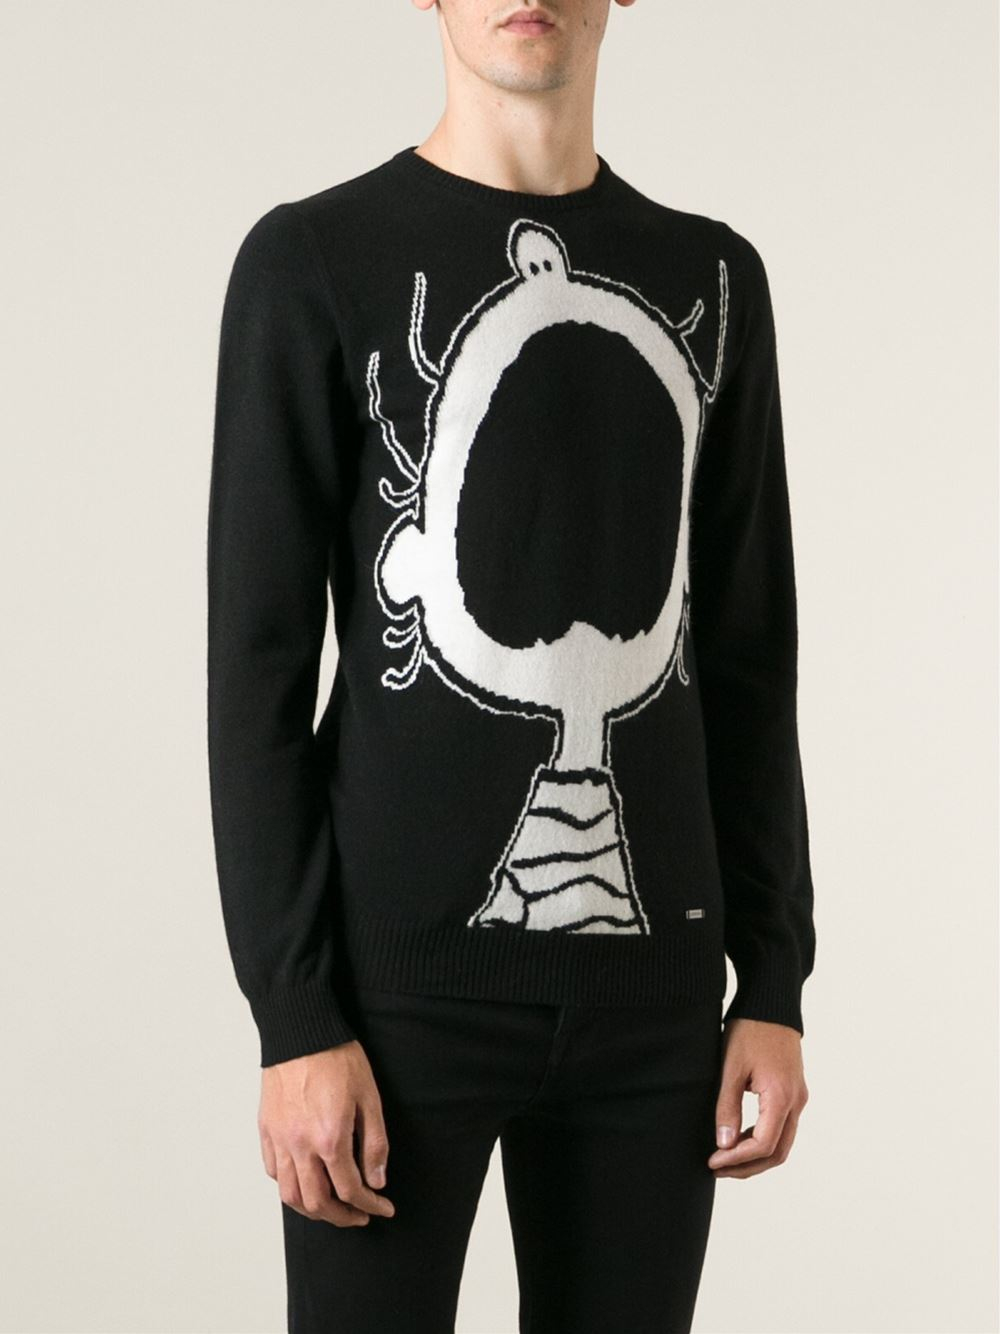 Iceberg Charlie Brown Sweater in Black for Men - Lyst